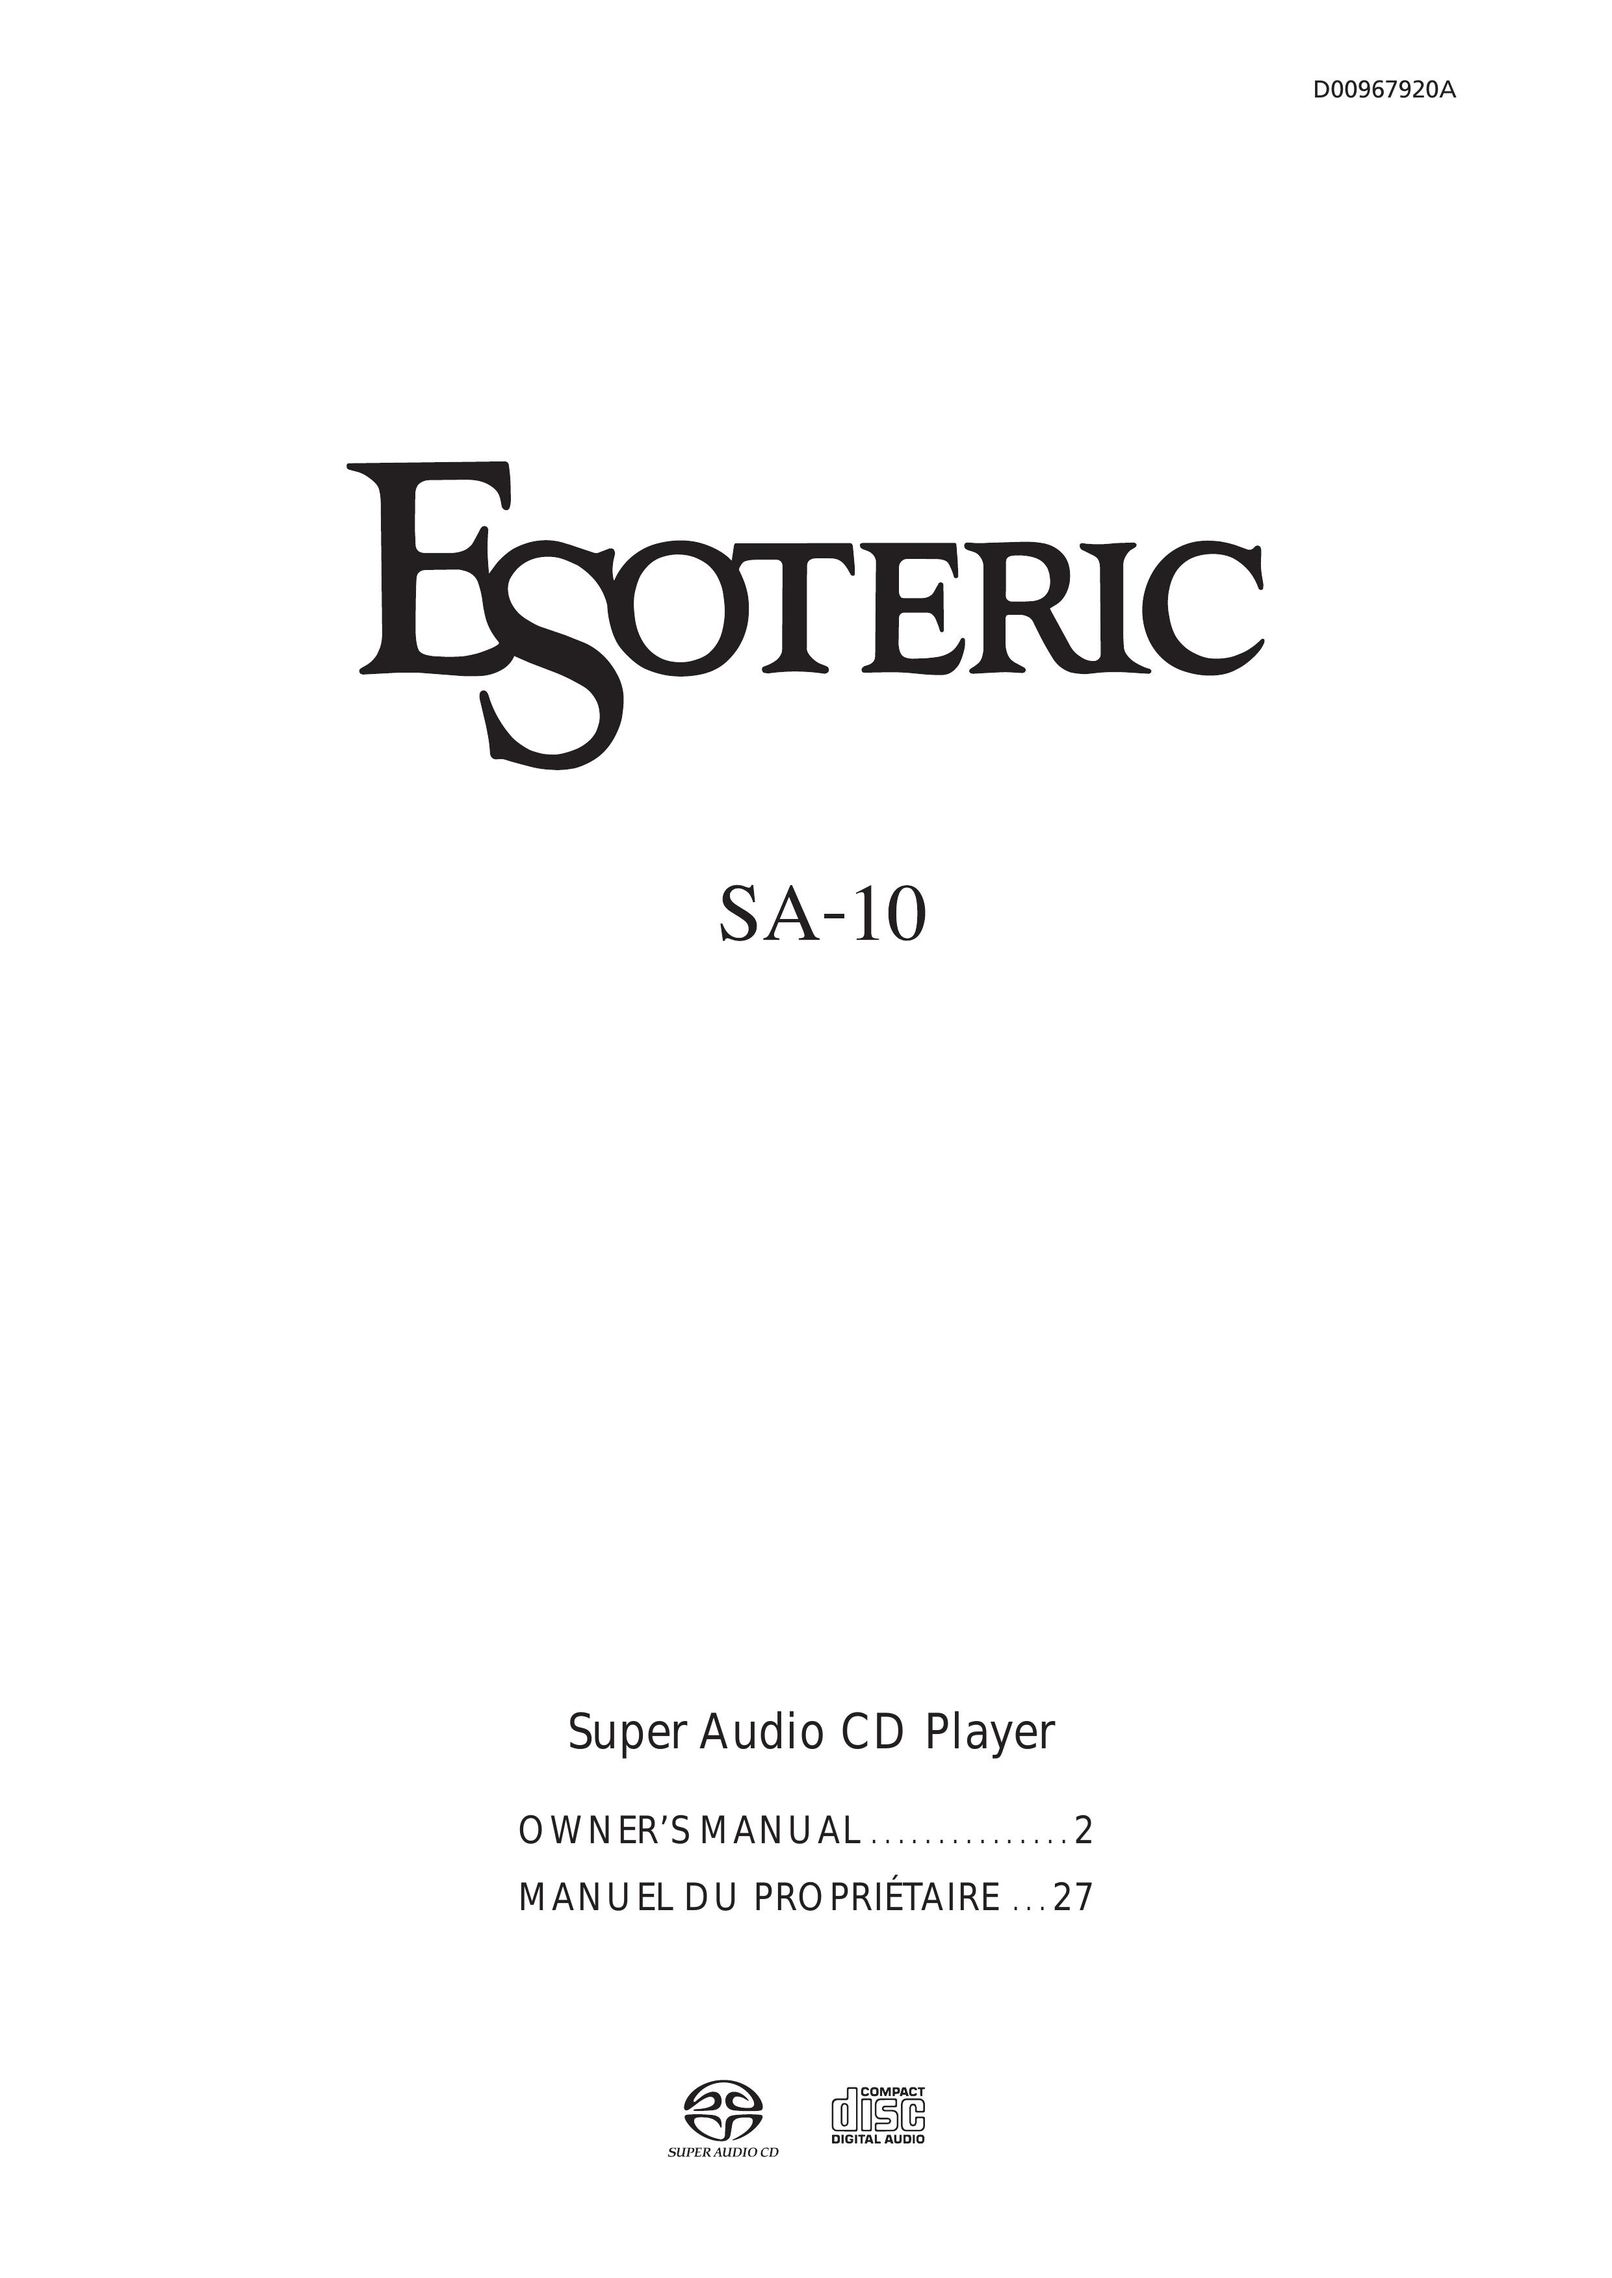 Esoteric SA-10 CD Player User Manual